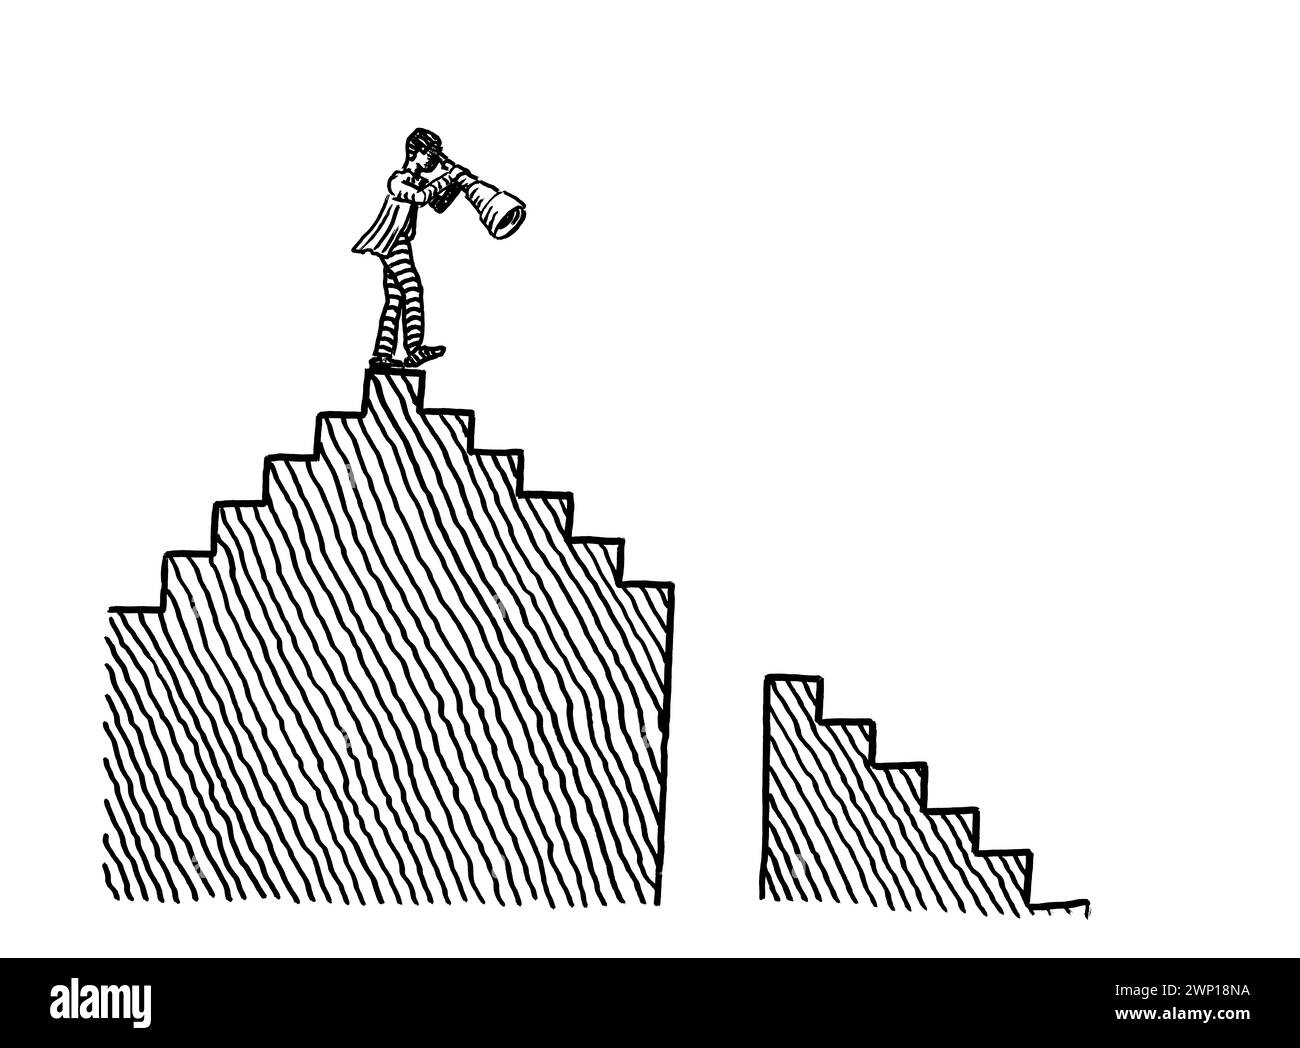 Disegno a penna a mano libera di un uomo d'affari in cima a una scala osservando le difficoltà nella discesa in avanti lungo una rampa di scale. Metafora della pianificazione Foto Stock